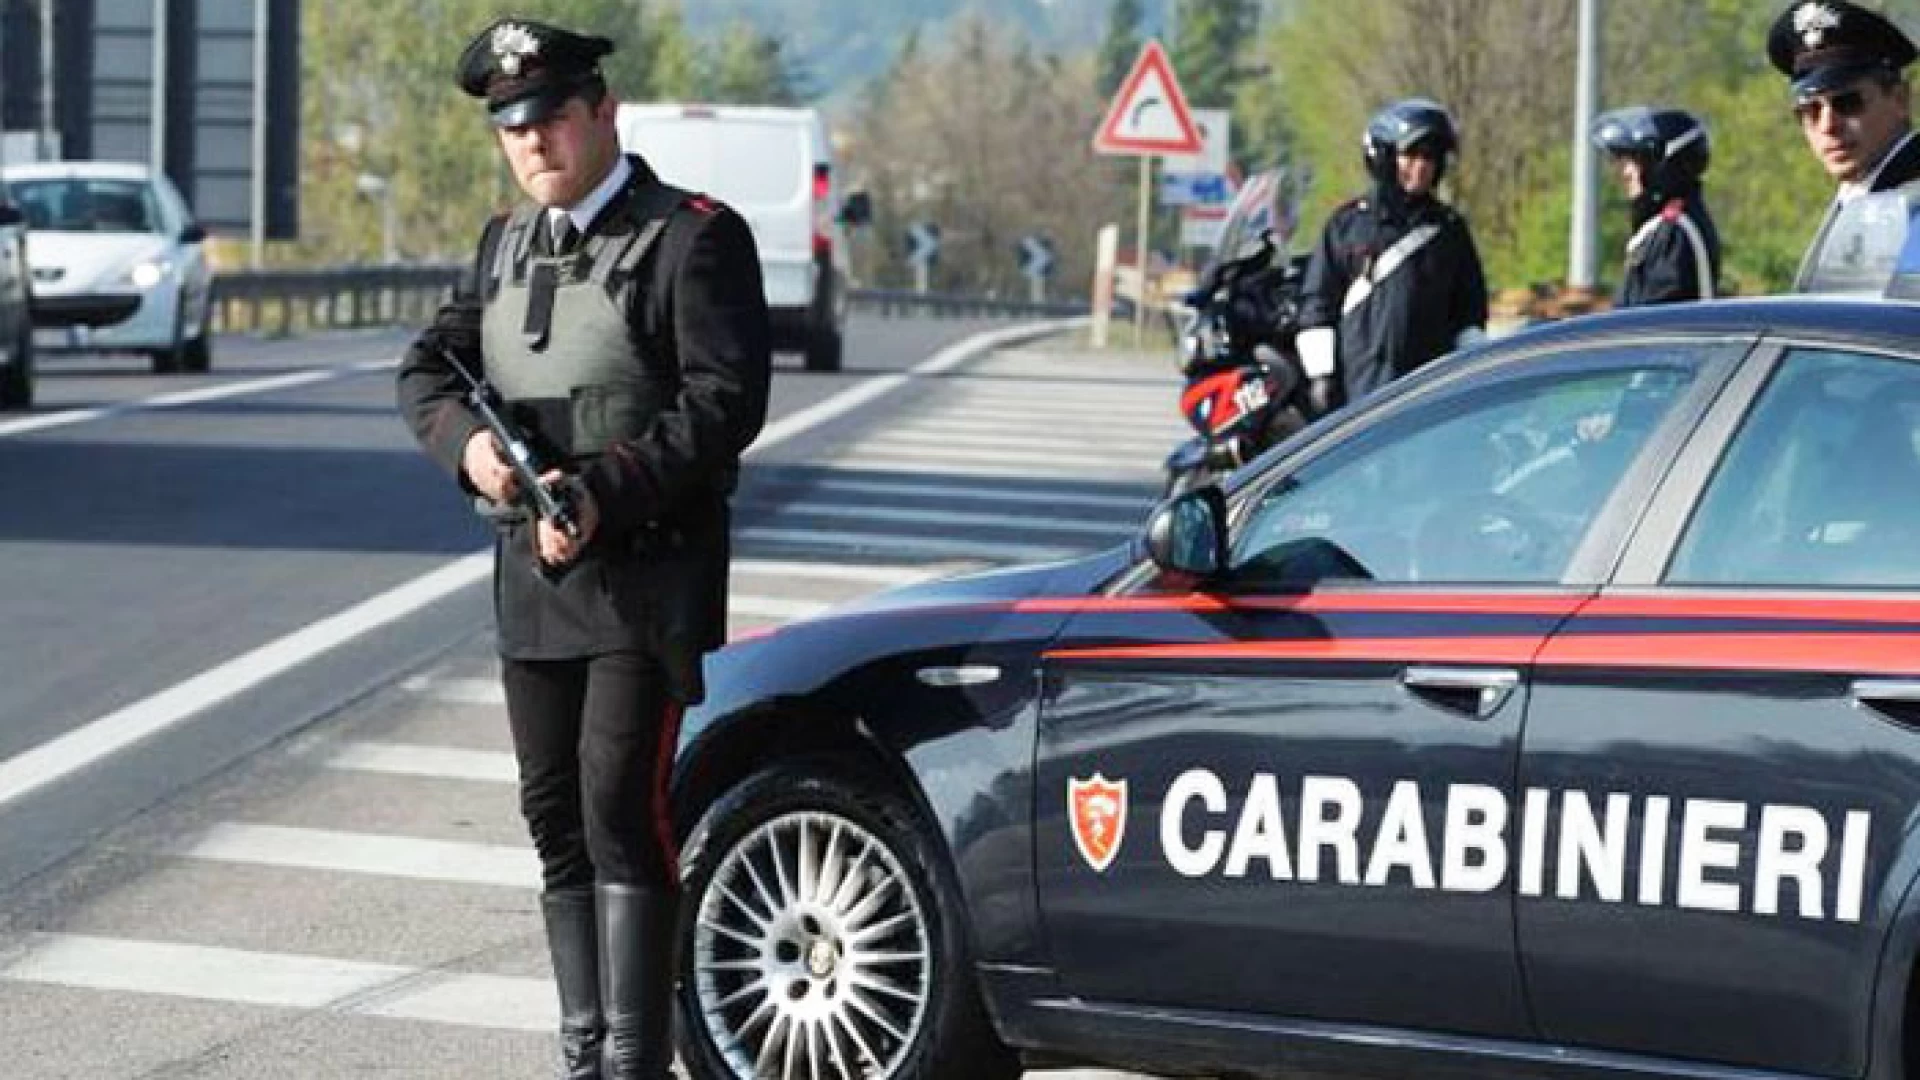 Colli a Volturno: denunciato un30enne di Pescara per truffa aggrava nei confronti di un cittadino del posto.